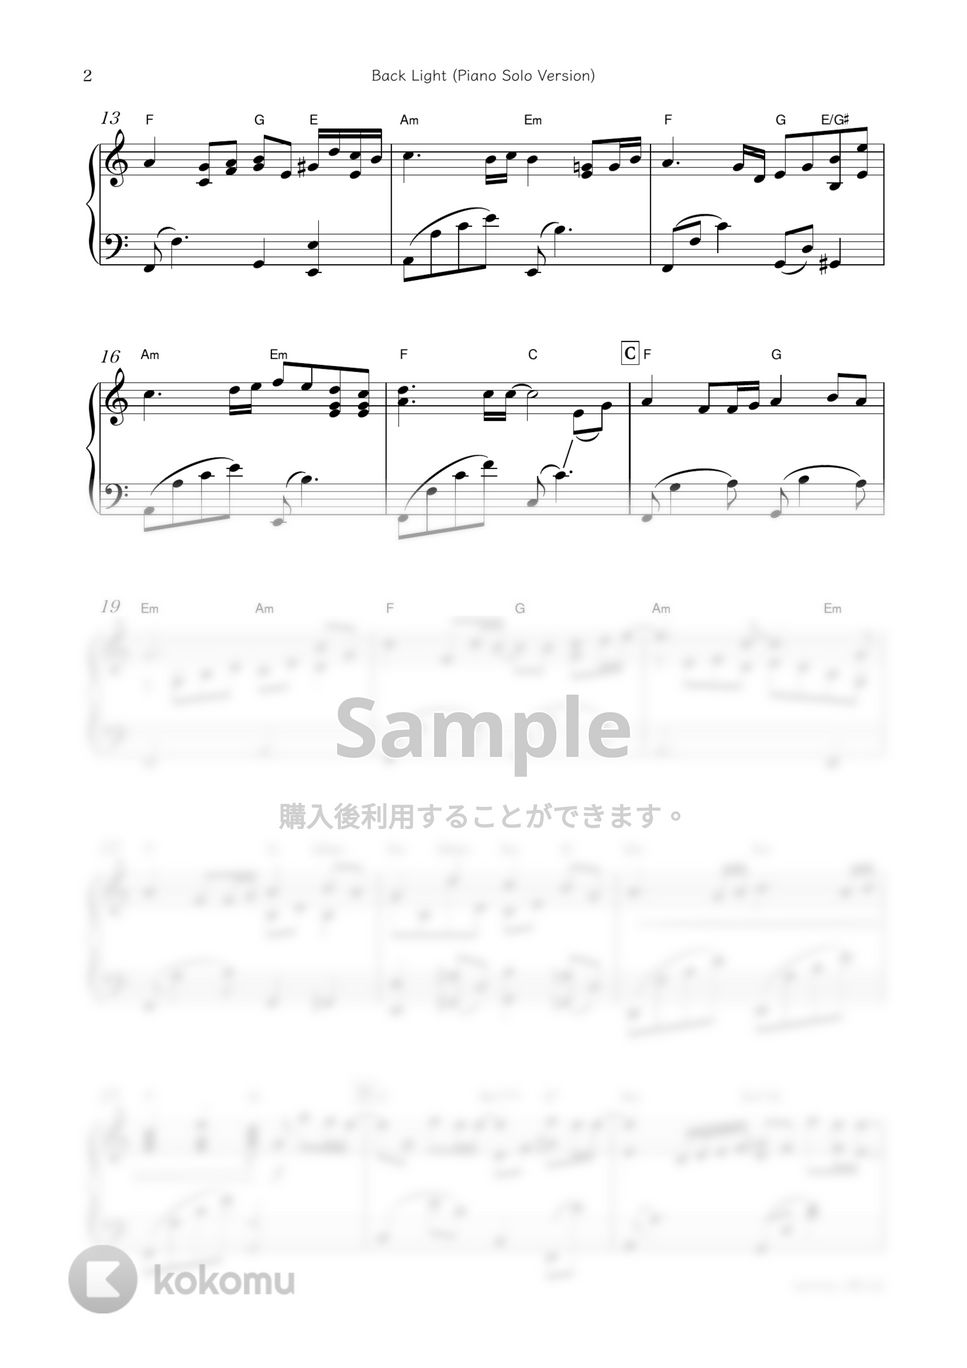 ドラマ『ミステリと言う勿れ』OST - Back Light (Piano Solo Version) by sammy